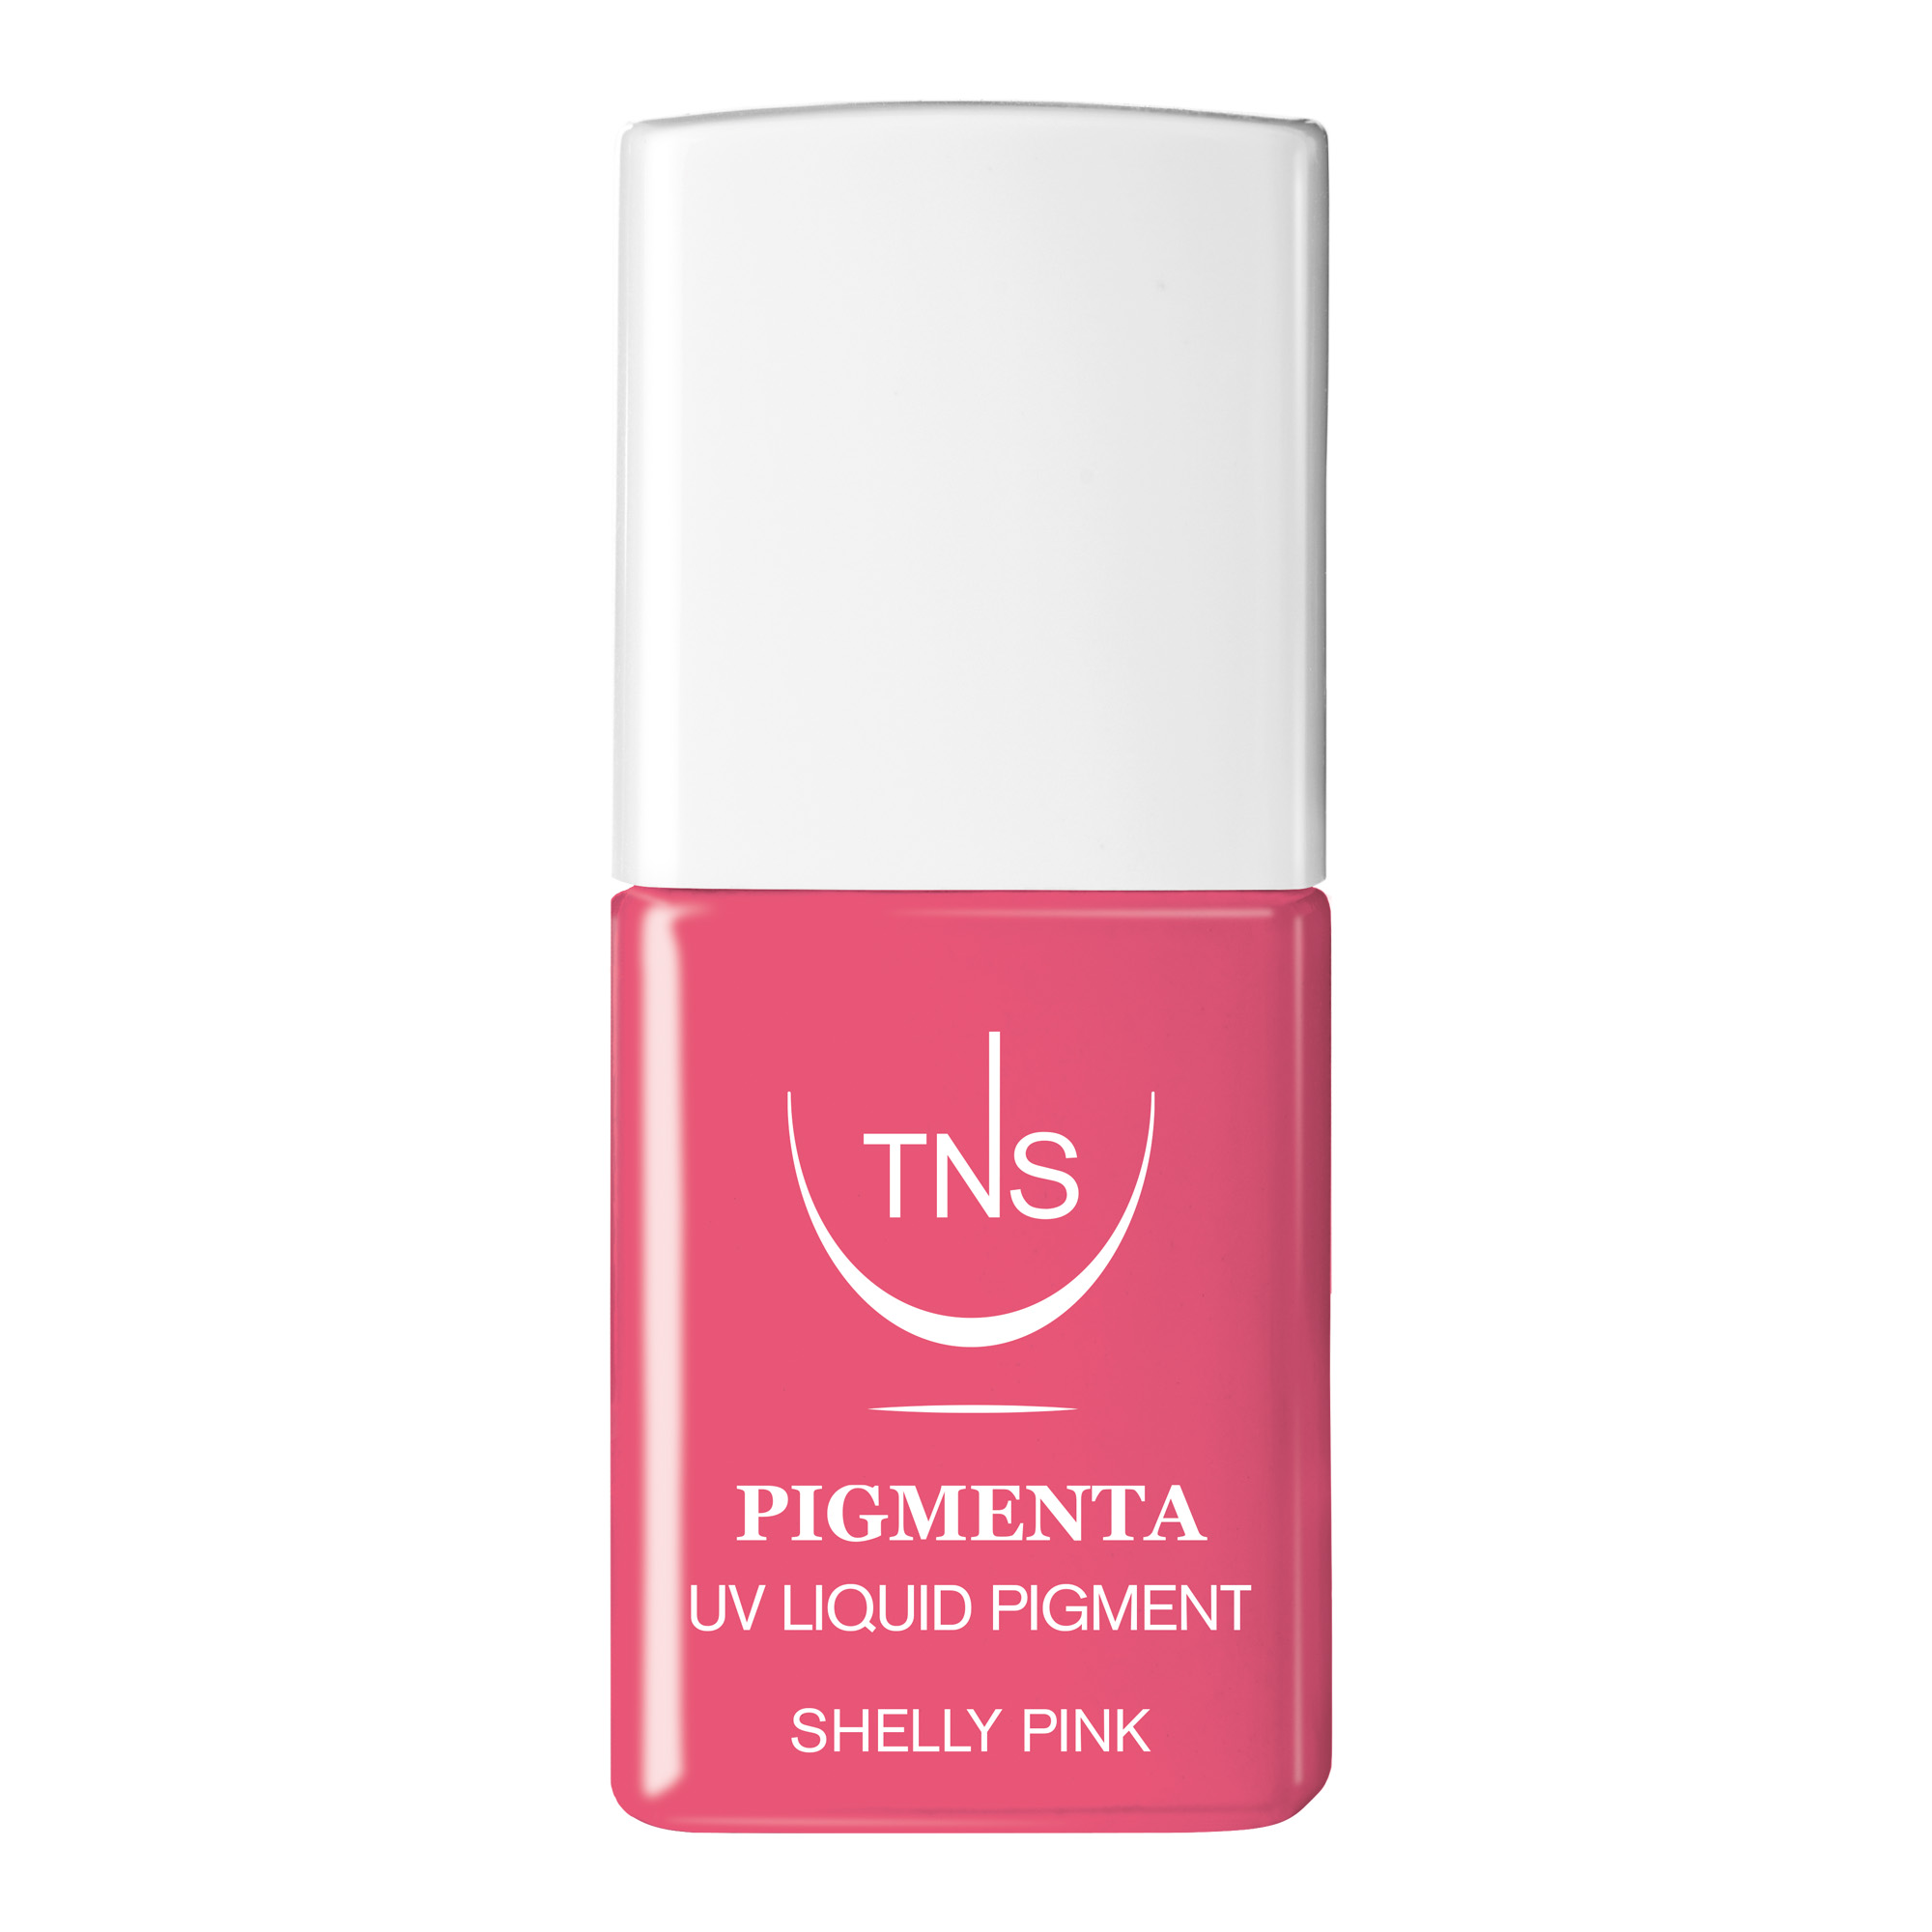 Pigmento Liquido UV Shelly Pink rosa brillante 10 ml Pigmenta TNS